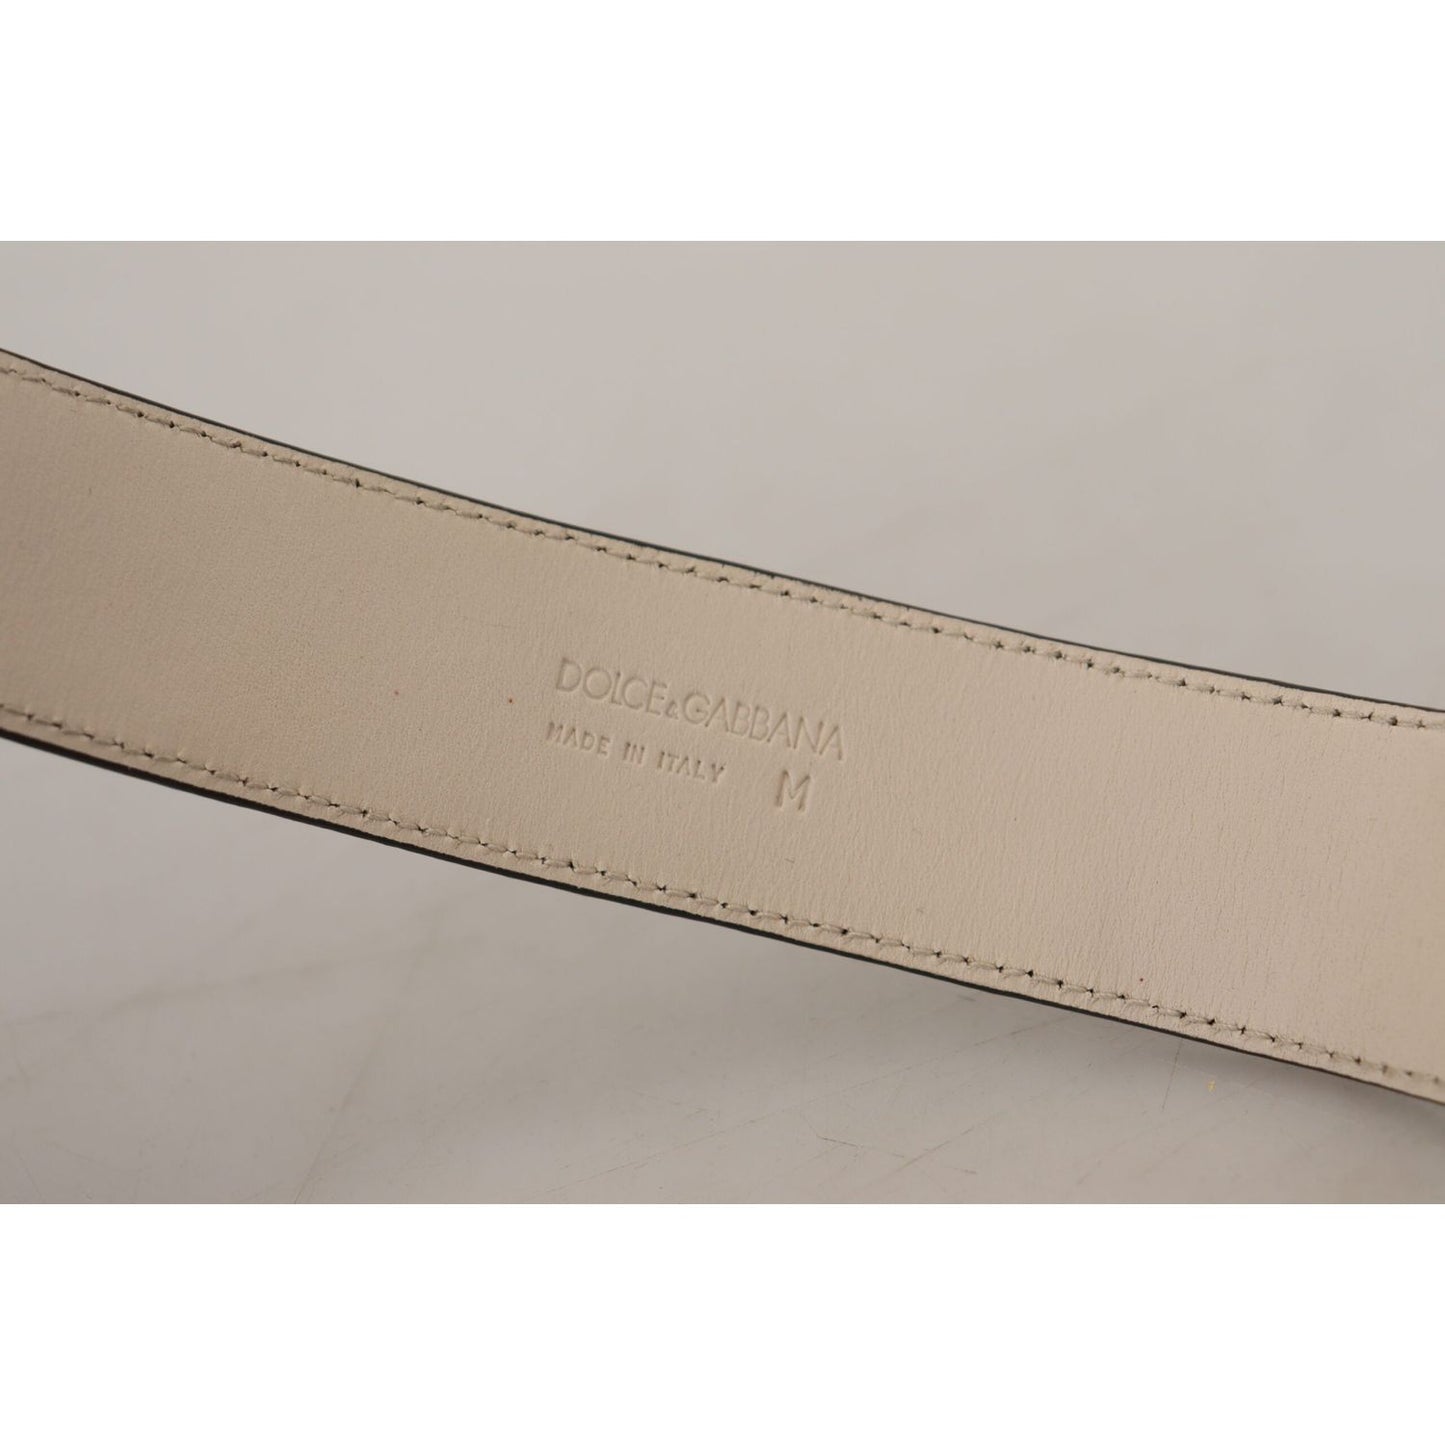 Dolce & GabbanaElegant Black Leather Gold Detail BraceletMcRichard Designer Brands£519.00